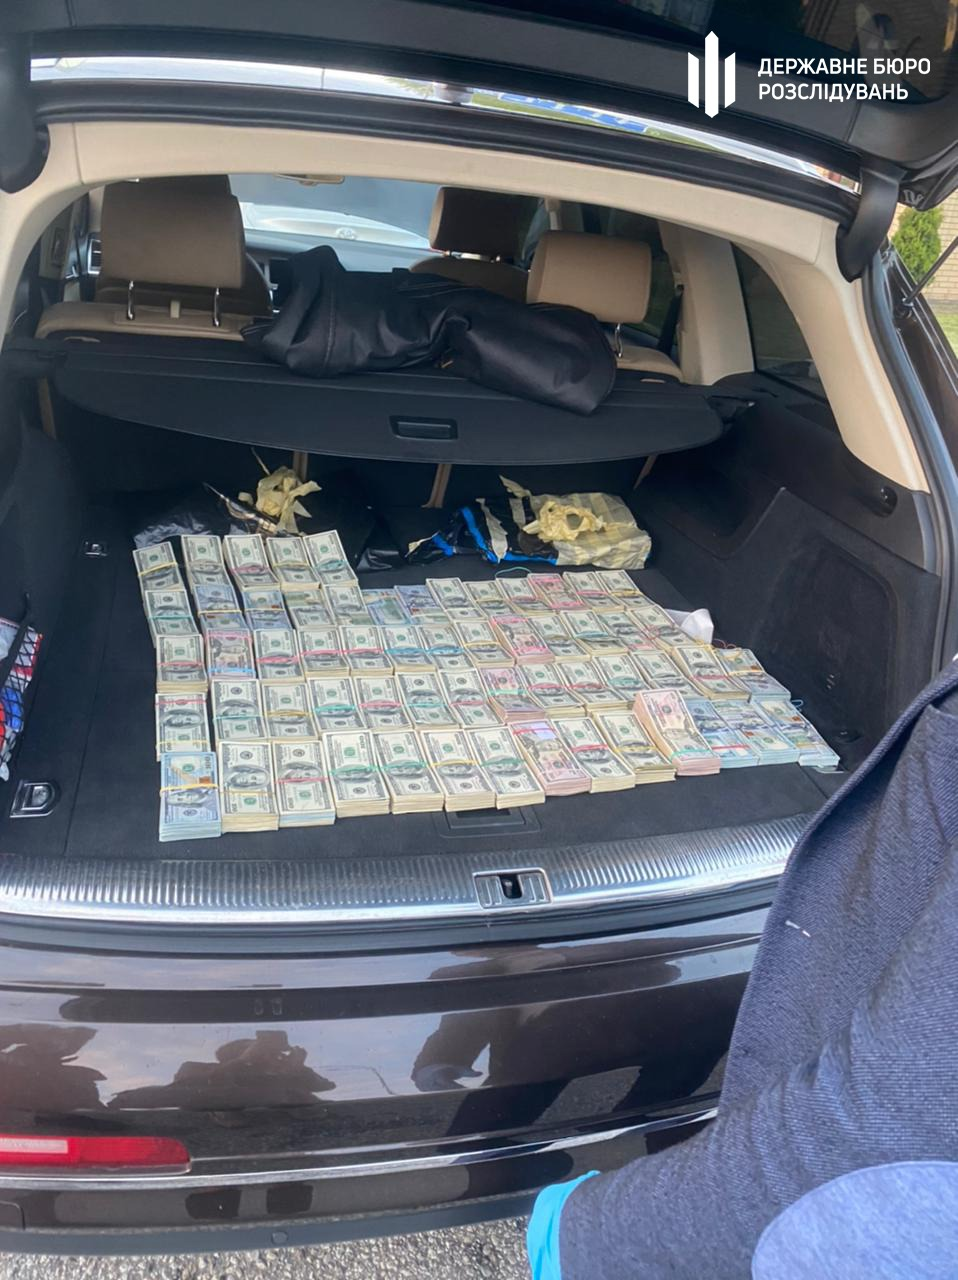 ГБР нашло $700 000 в автомобиле начальника таможенного поста: фото